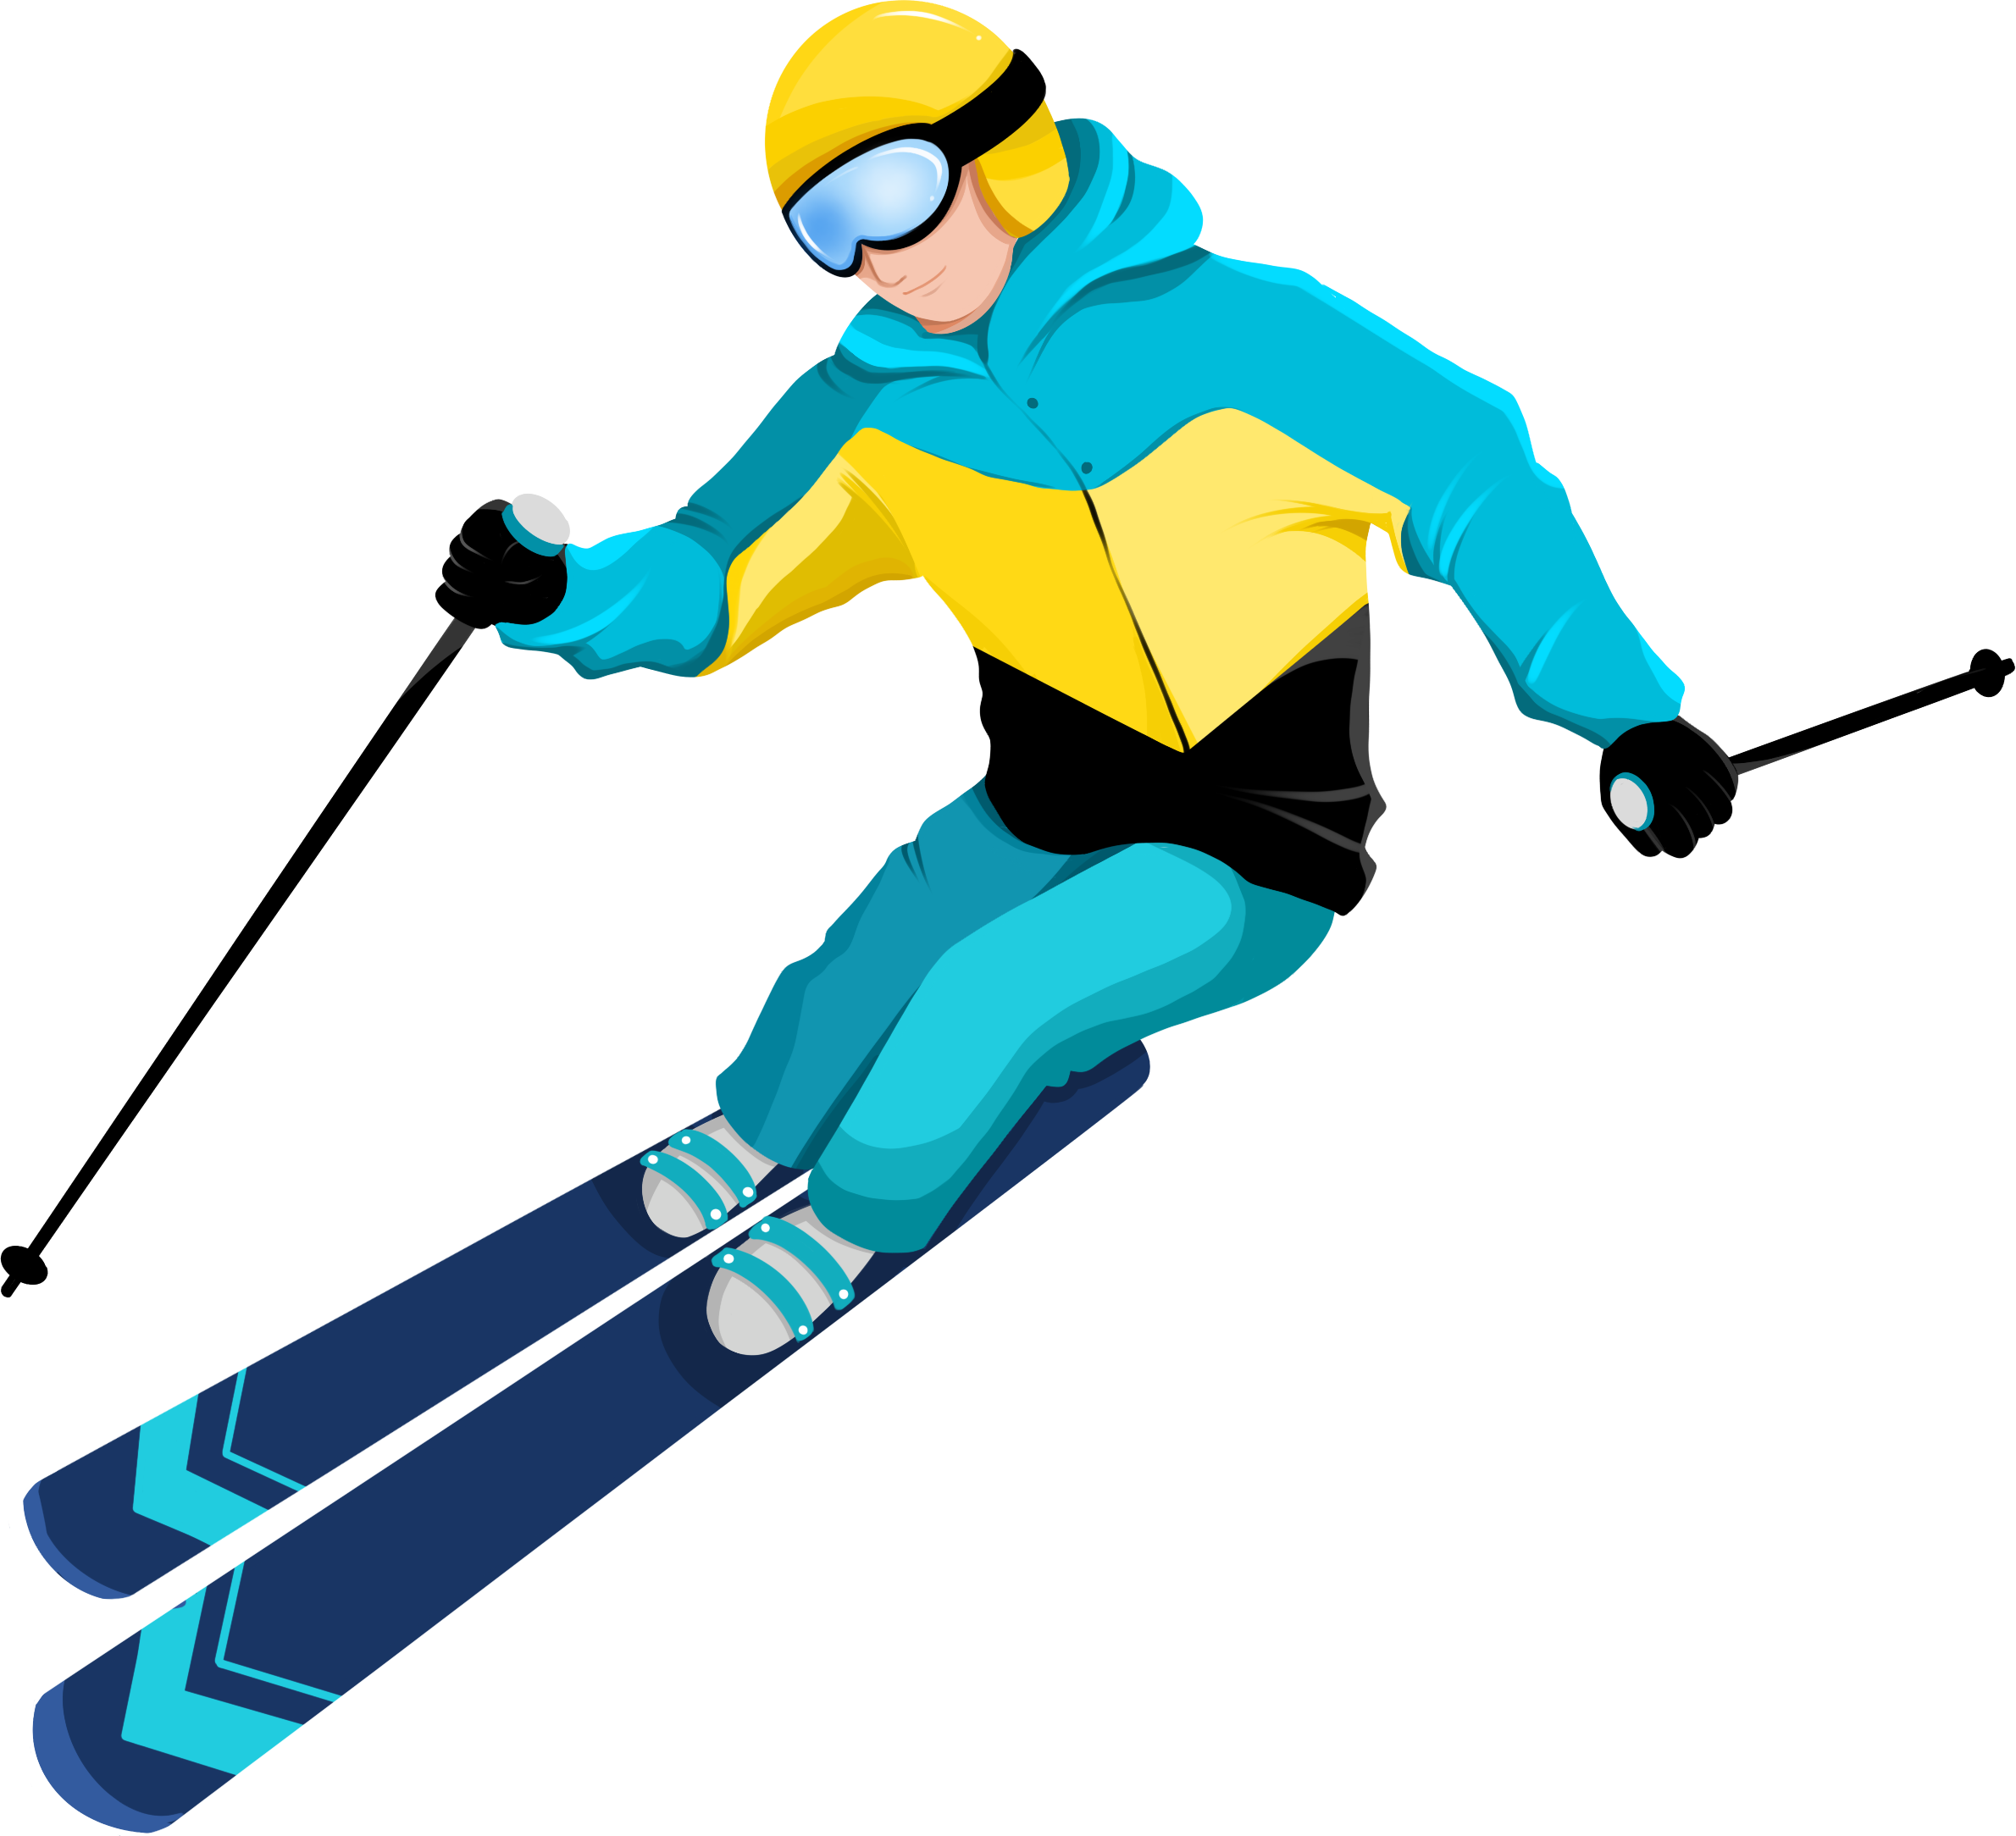 2022年北京冬奥会双板滑雪卡通人物图片